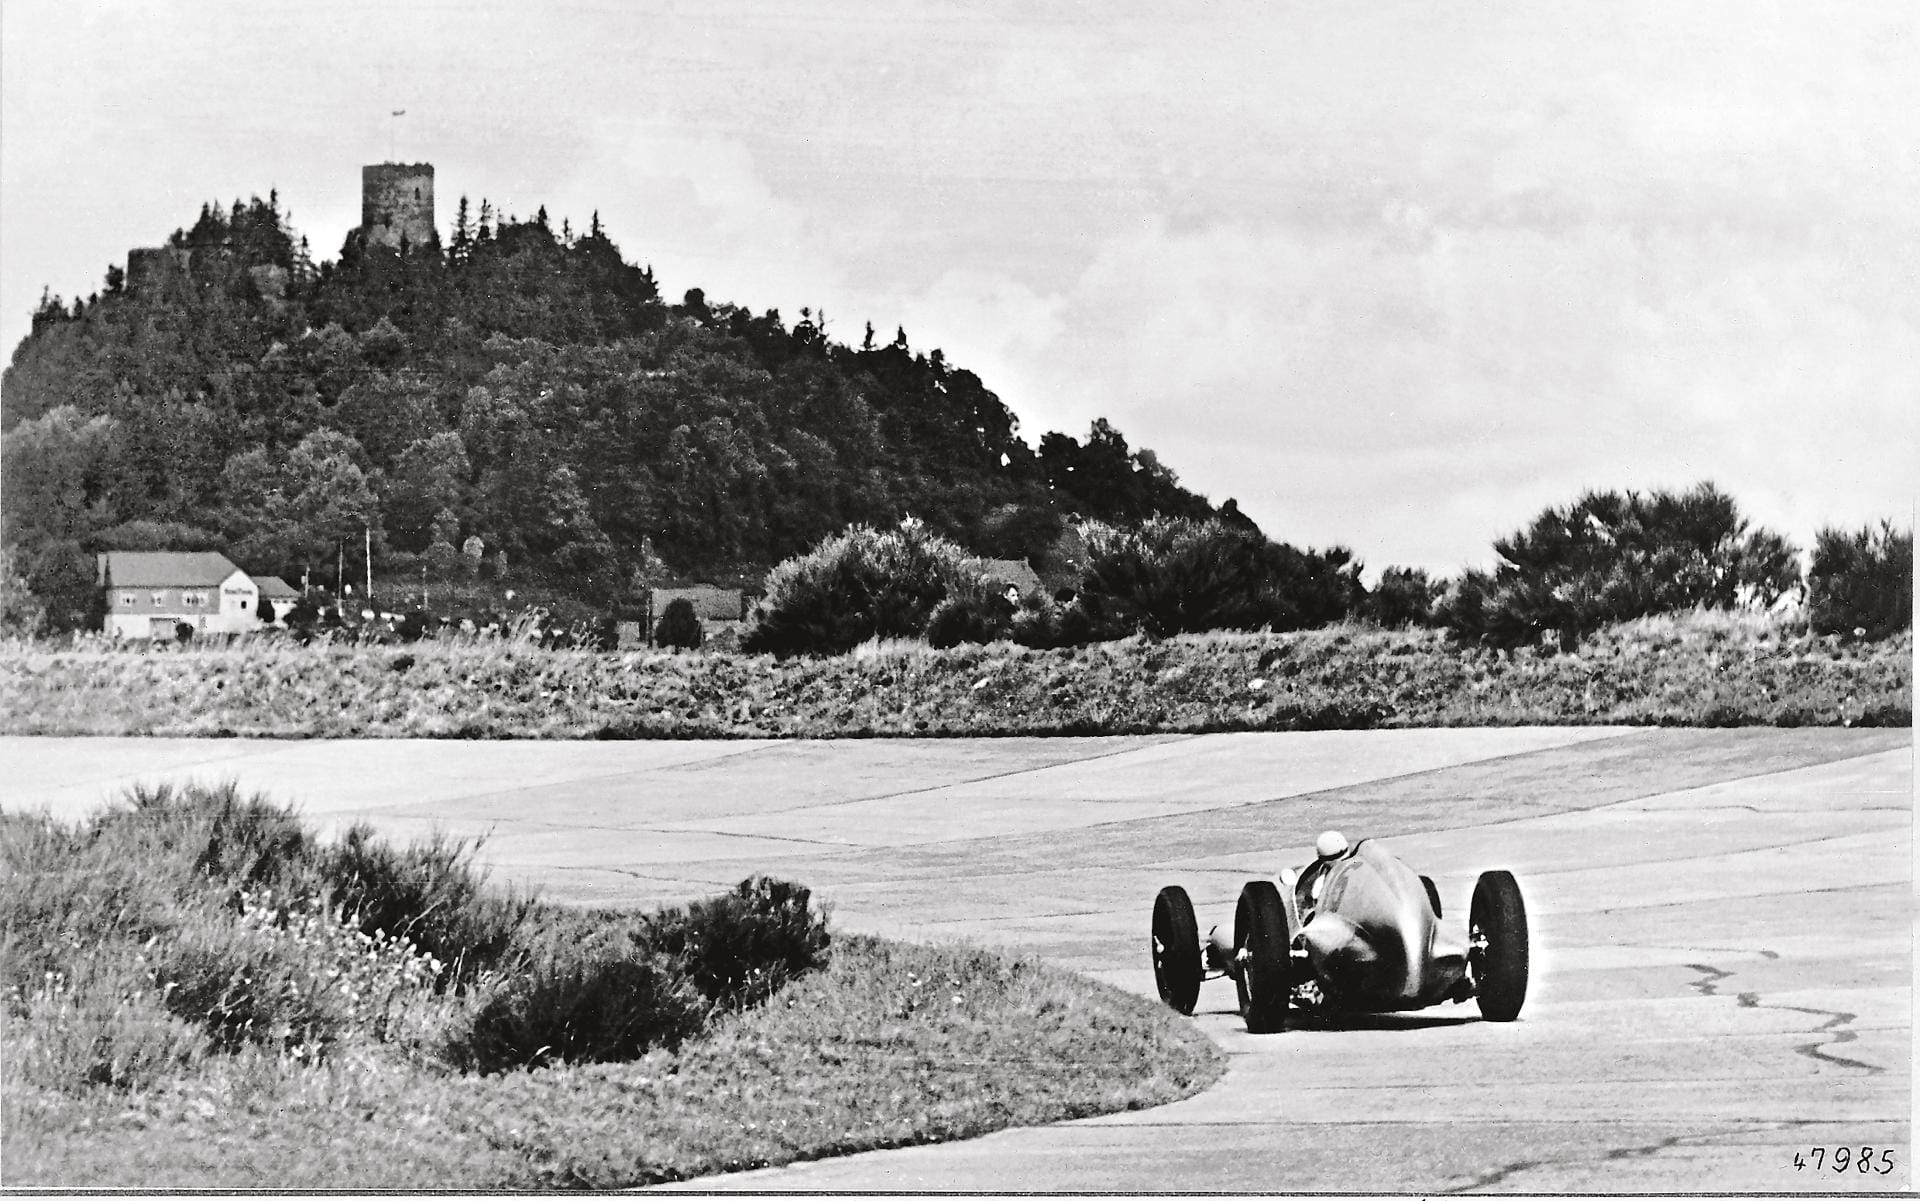 Ganz eng verbunden mit der Geschichte der Nordschleife sind die Silberpfeile von Mercedes. Die legendären Rennwagen fuhren in den 30-er-Jahren von Sieg zu Sieg. Hier sehen wir Hermann Lang beim Großen Preis von Deutschland im Jahr 1937.